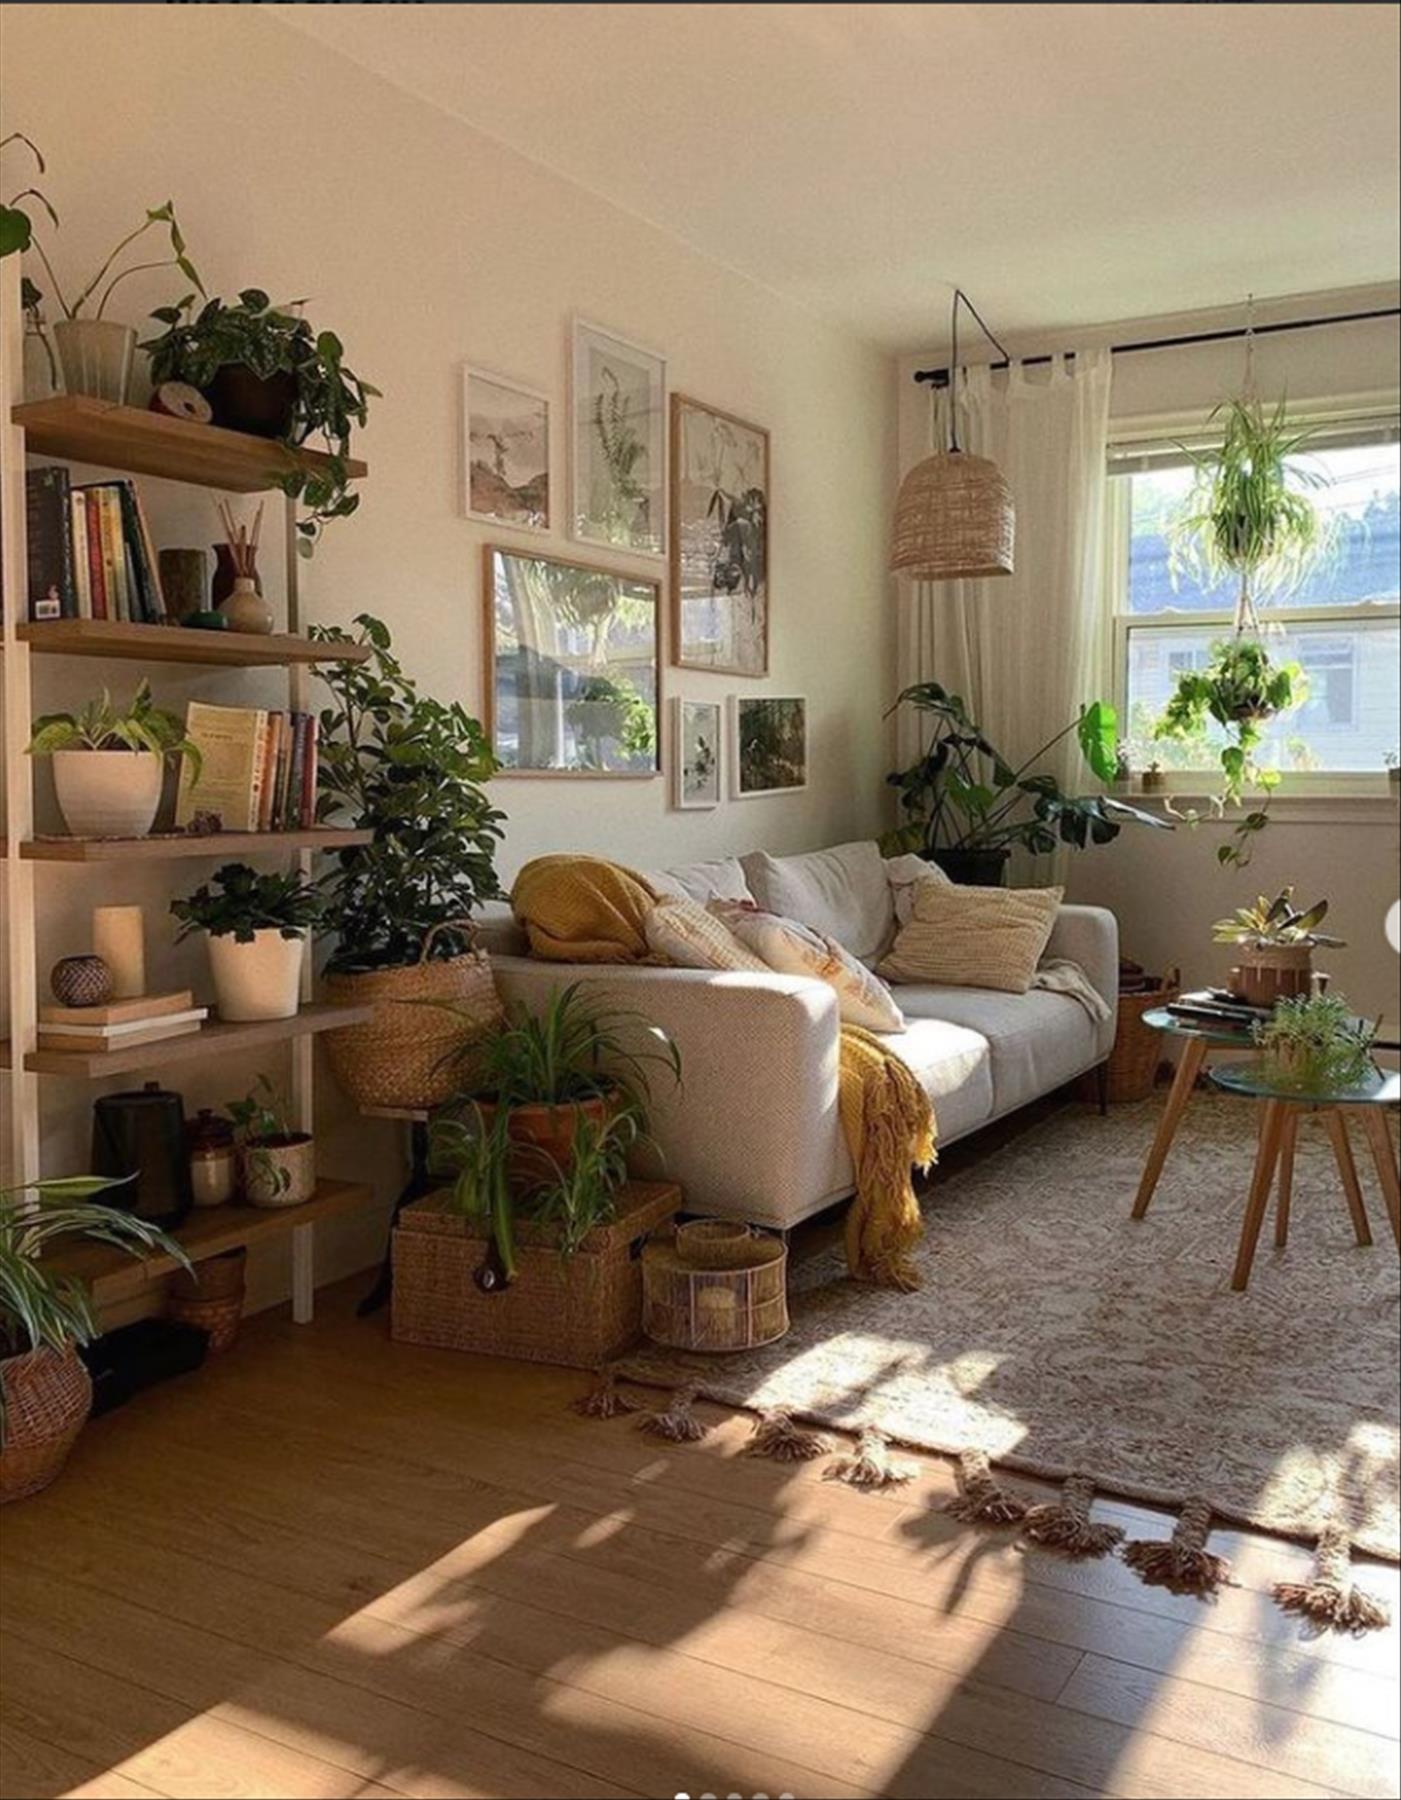 Cozy Winter Living room decor ideas trending now